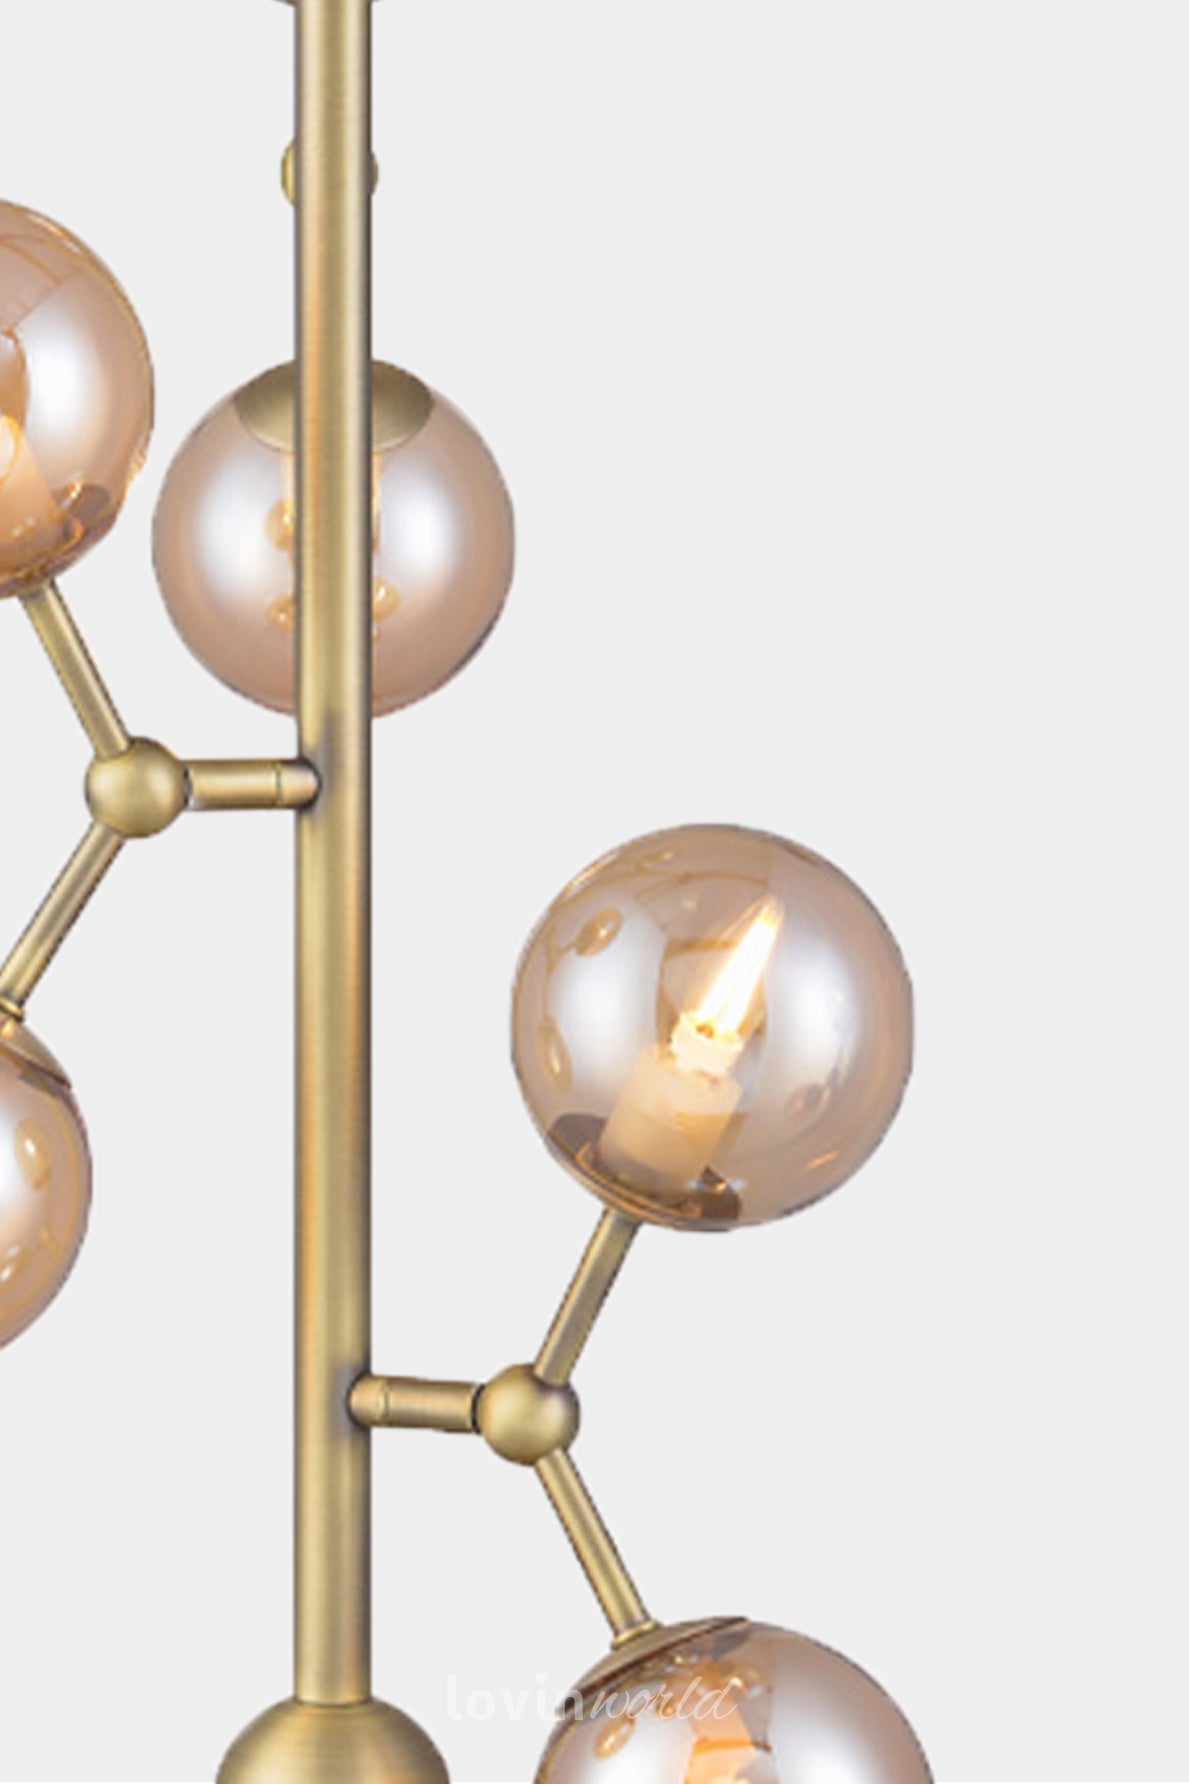 Lampada a sospensione Atom verticale, in colore ambra-LovinWorld